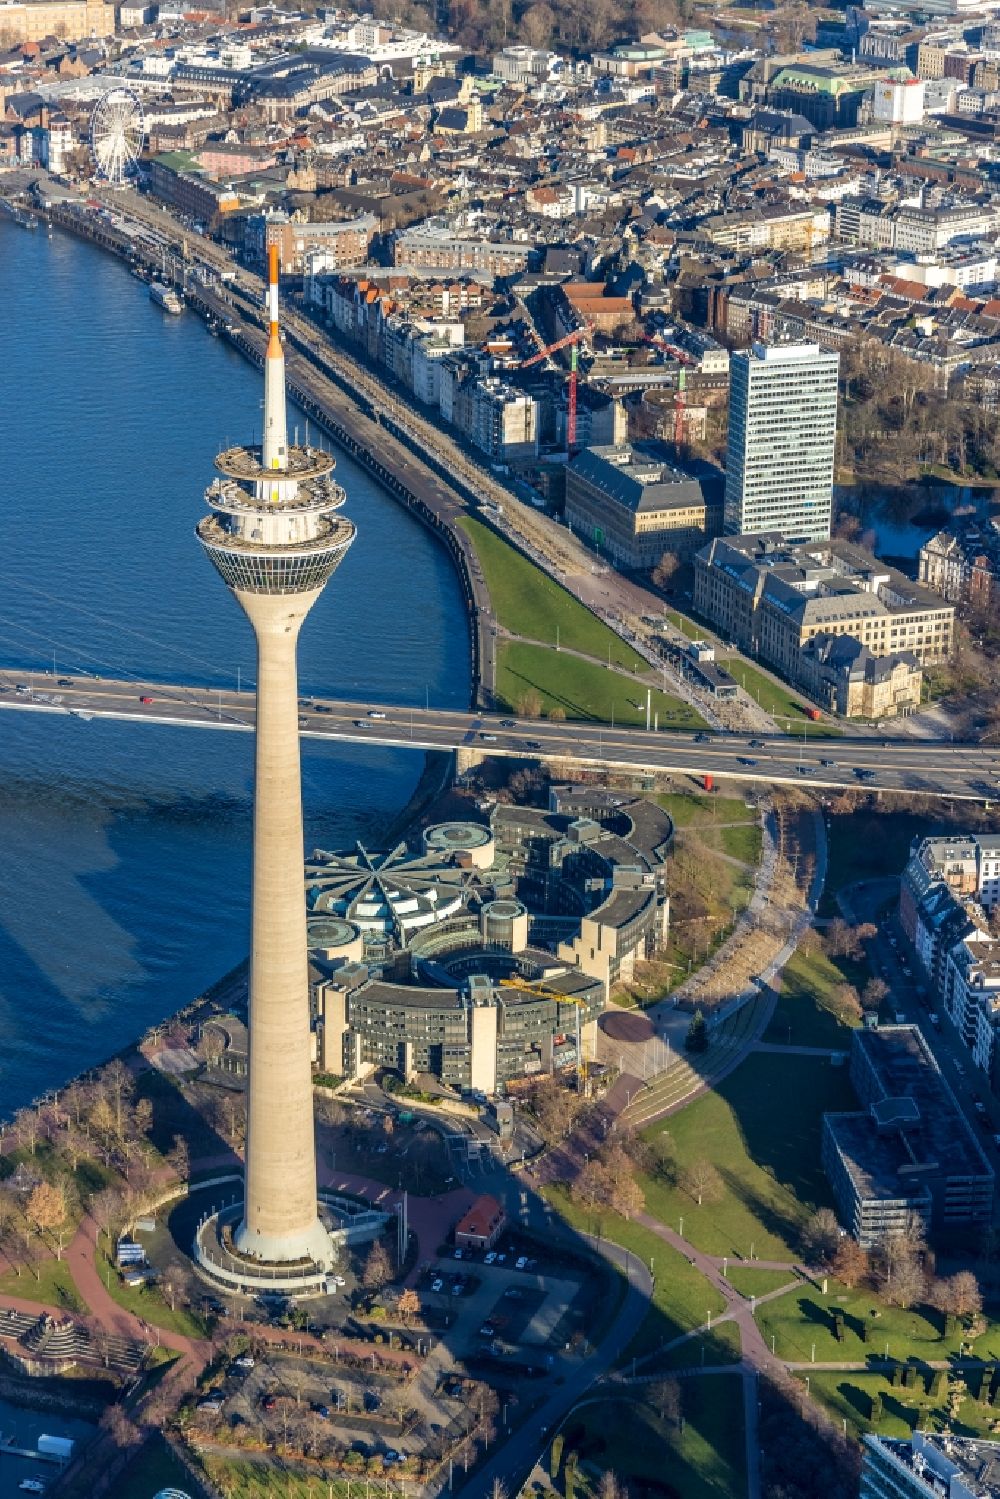 Luftbild Düsseldorf - Fernmeldeturm und Fernsehturm in Düsseldorf im Bundesland Nordrhein-Westfalen, Deutschland